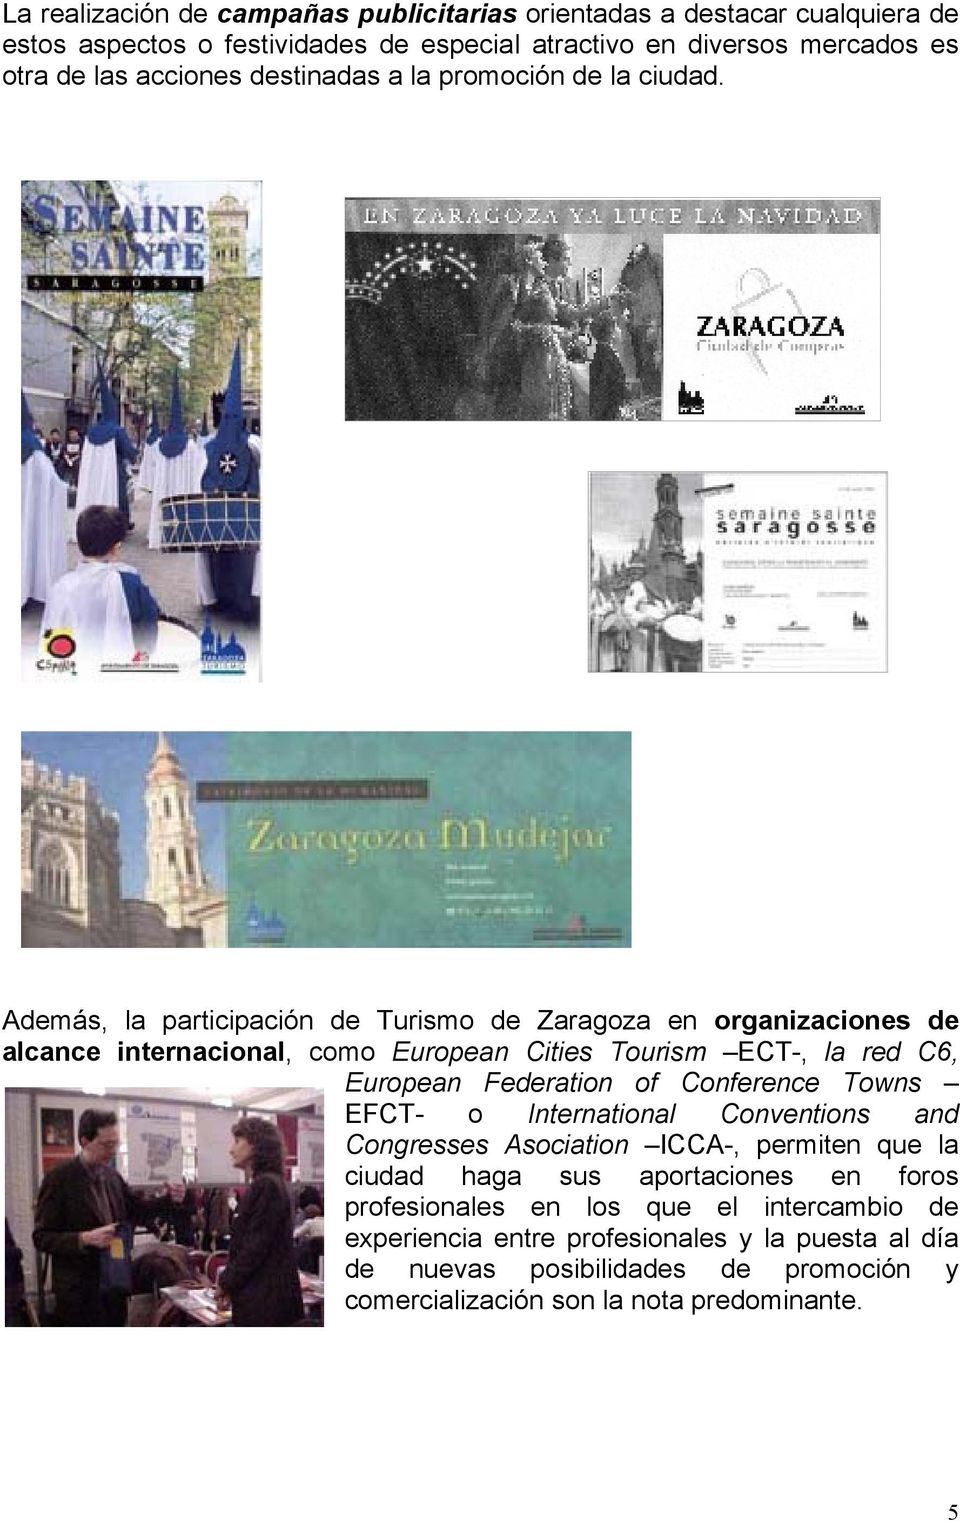 Además, la participación de Turismo de Zaragoza en organizaciones de alcance internacional, como European Cities Tourism ECT-, la red C6, European Federation of Conference